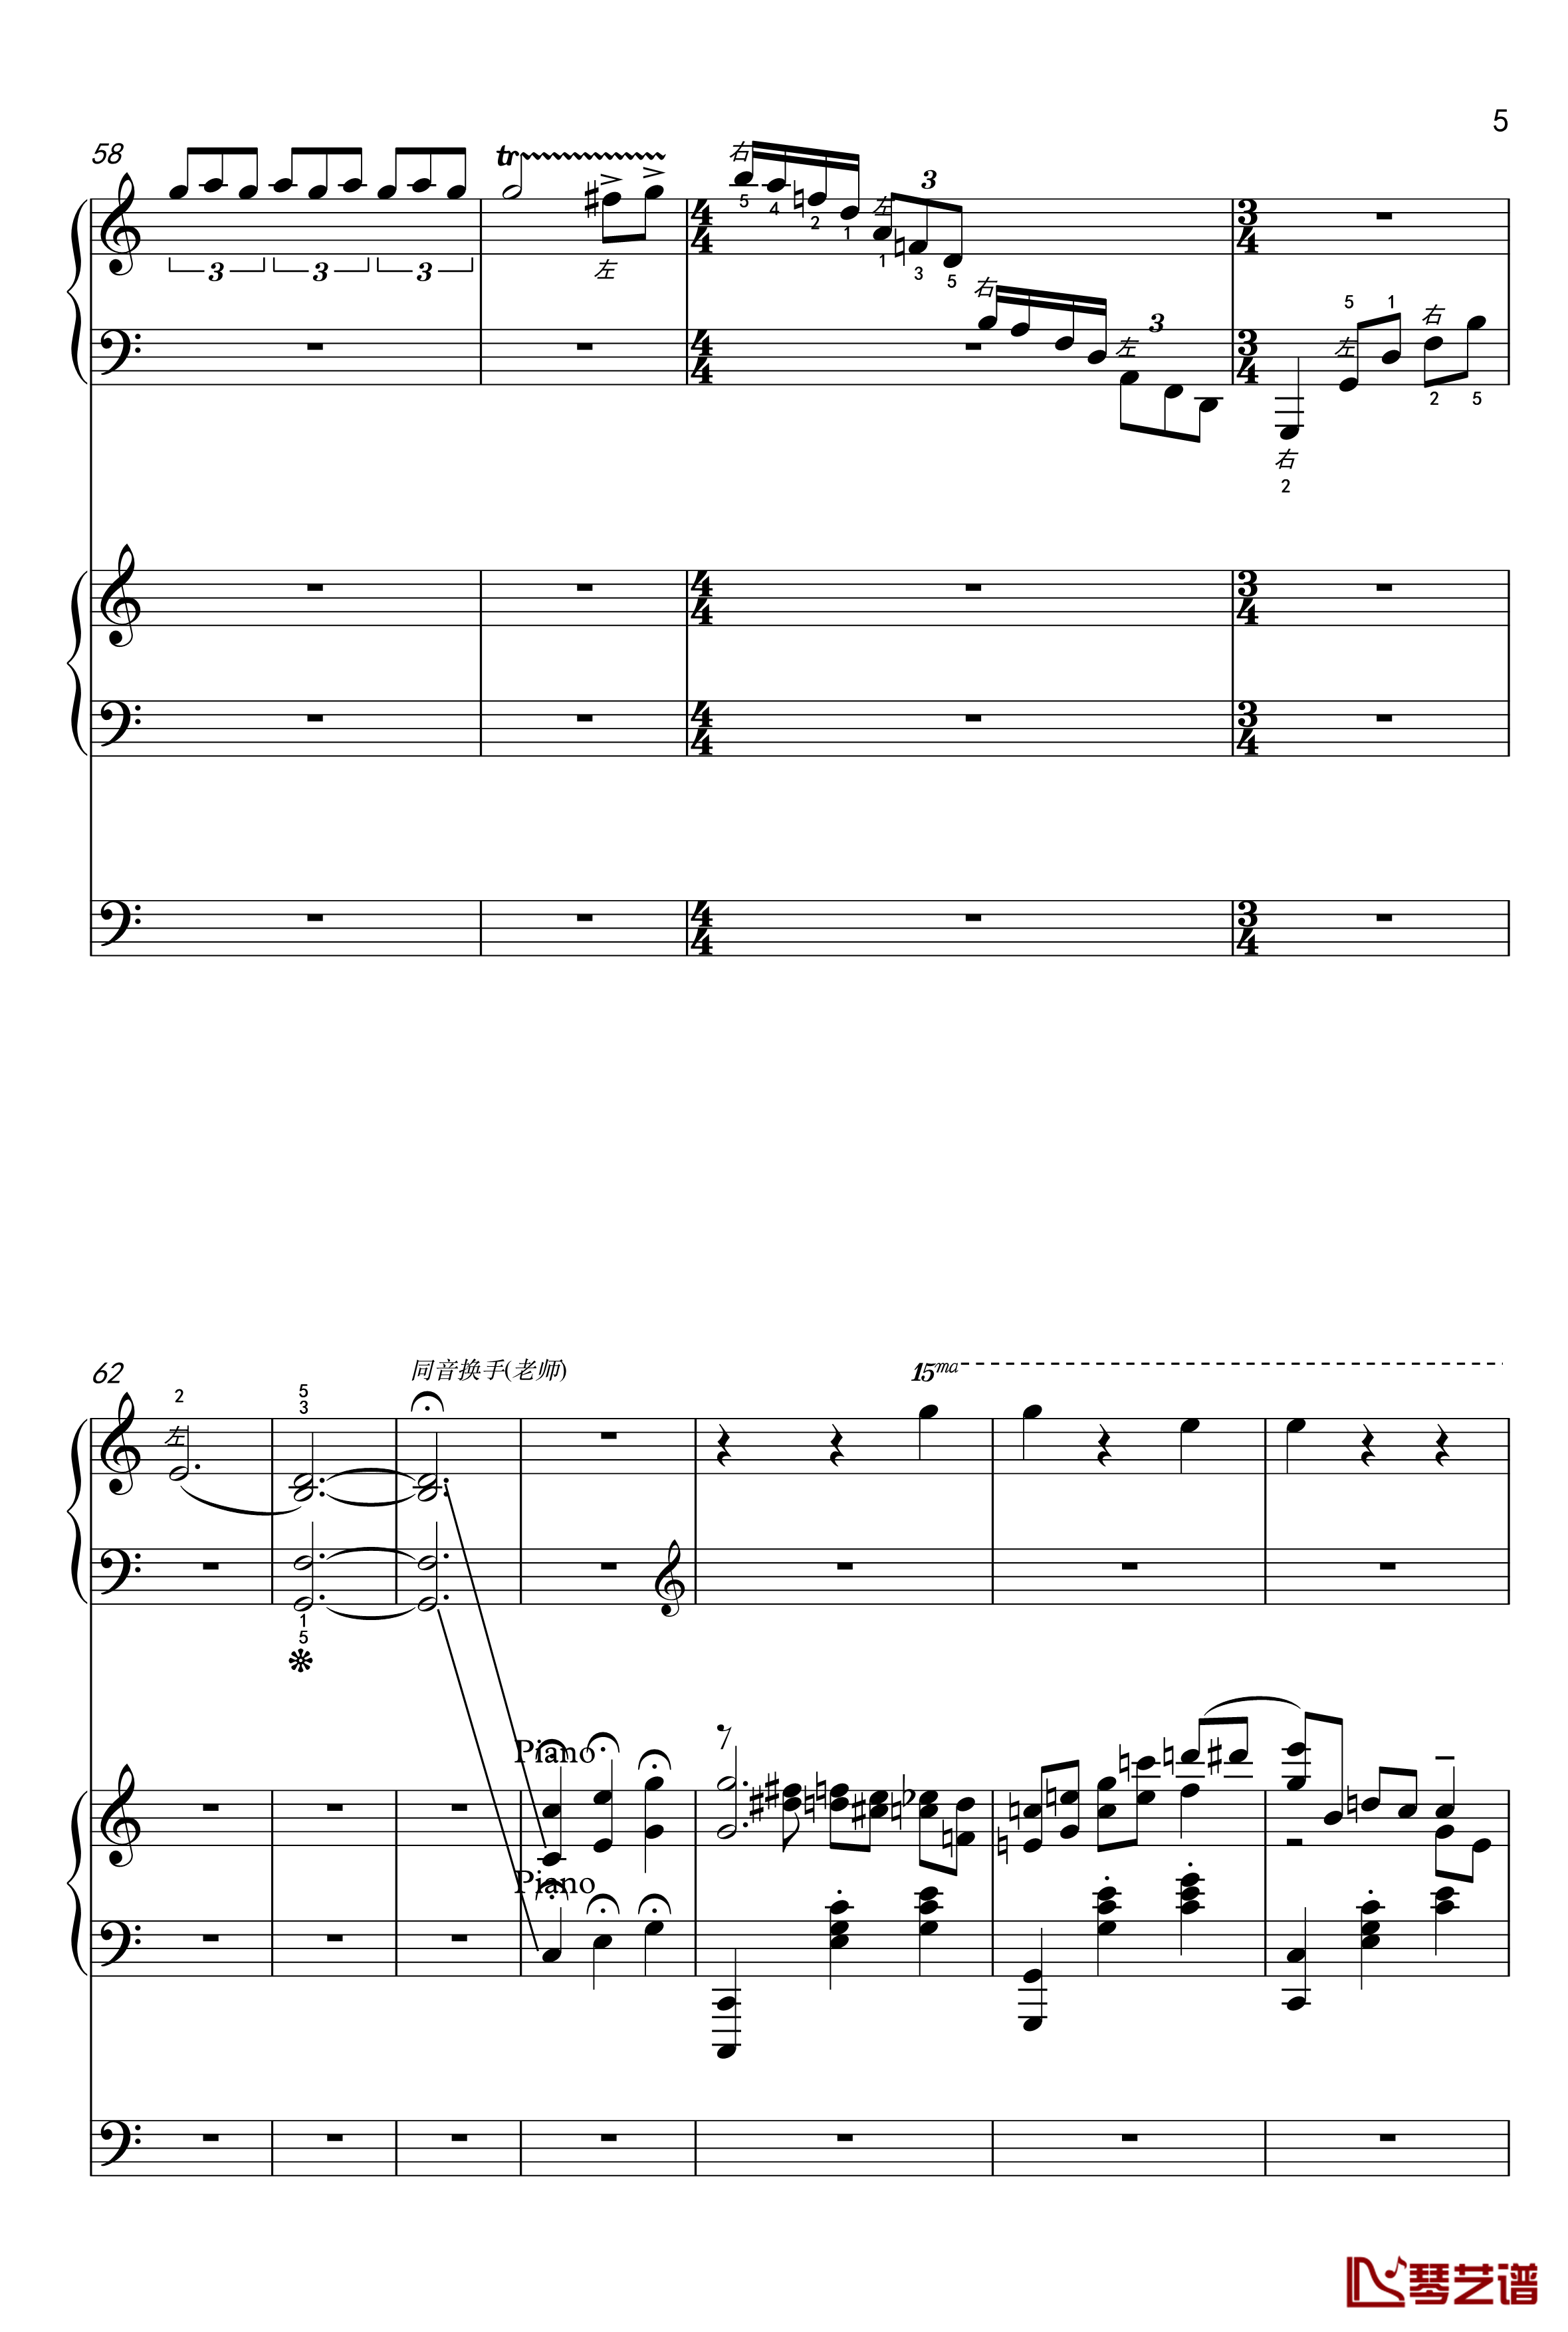 蓝色多瑙河钢琴谱-幼儿钢琴 双排键协奏版-王秉坤5